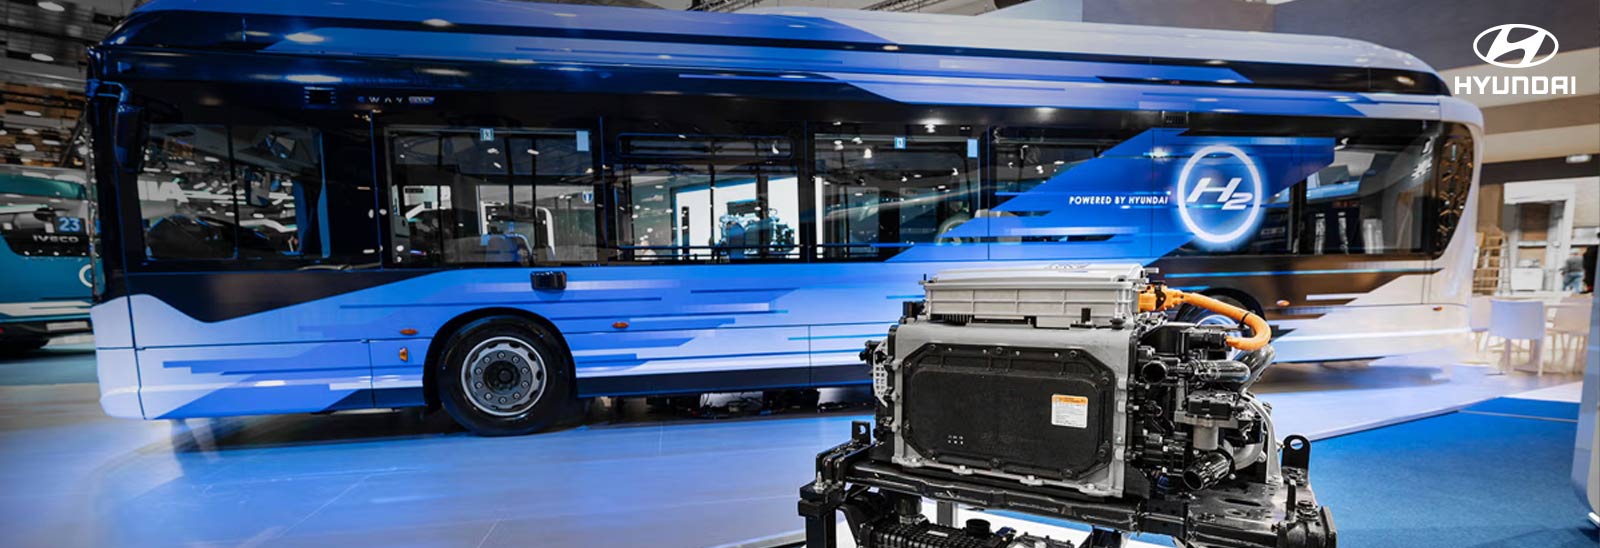 Autobús impulsado por hidrógeno desarrollado en conjunto por Hyundai Motor y Grupo Iveco